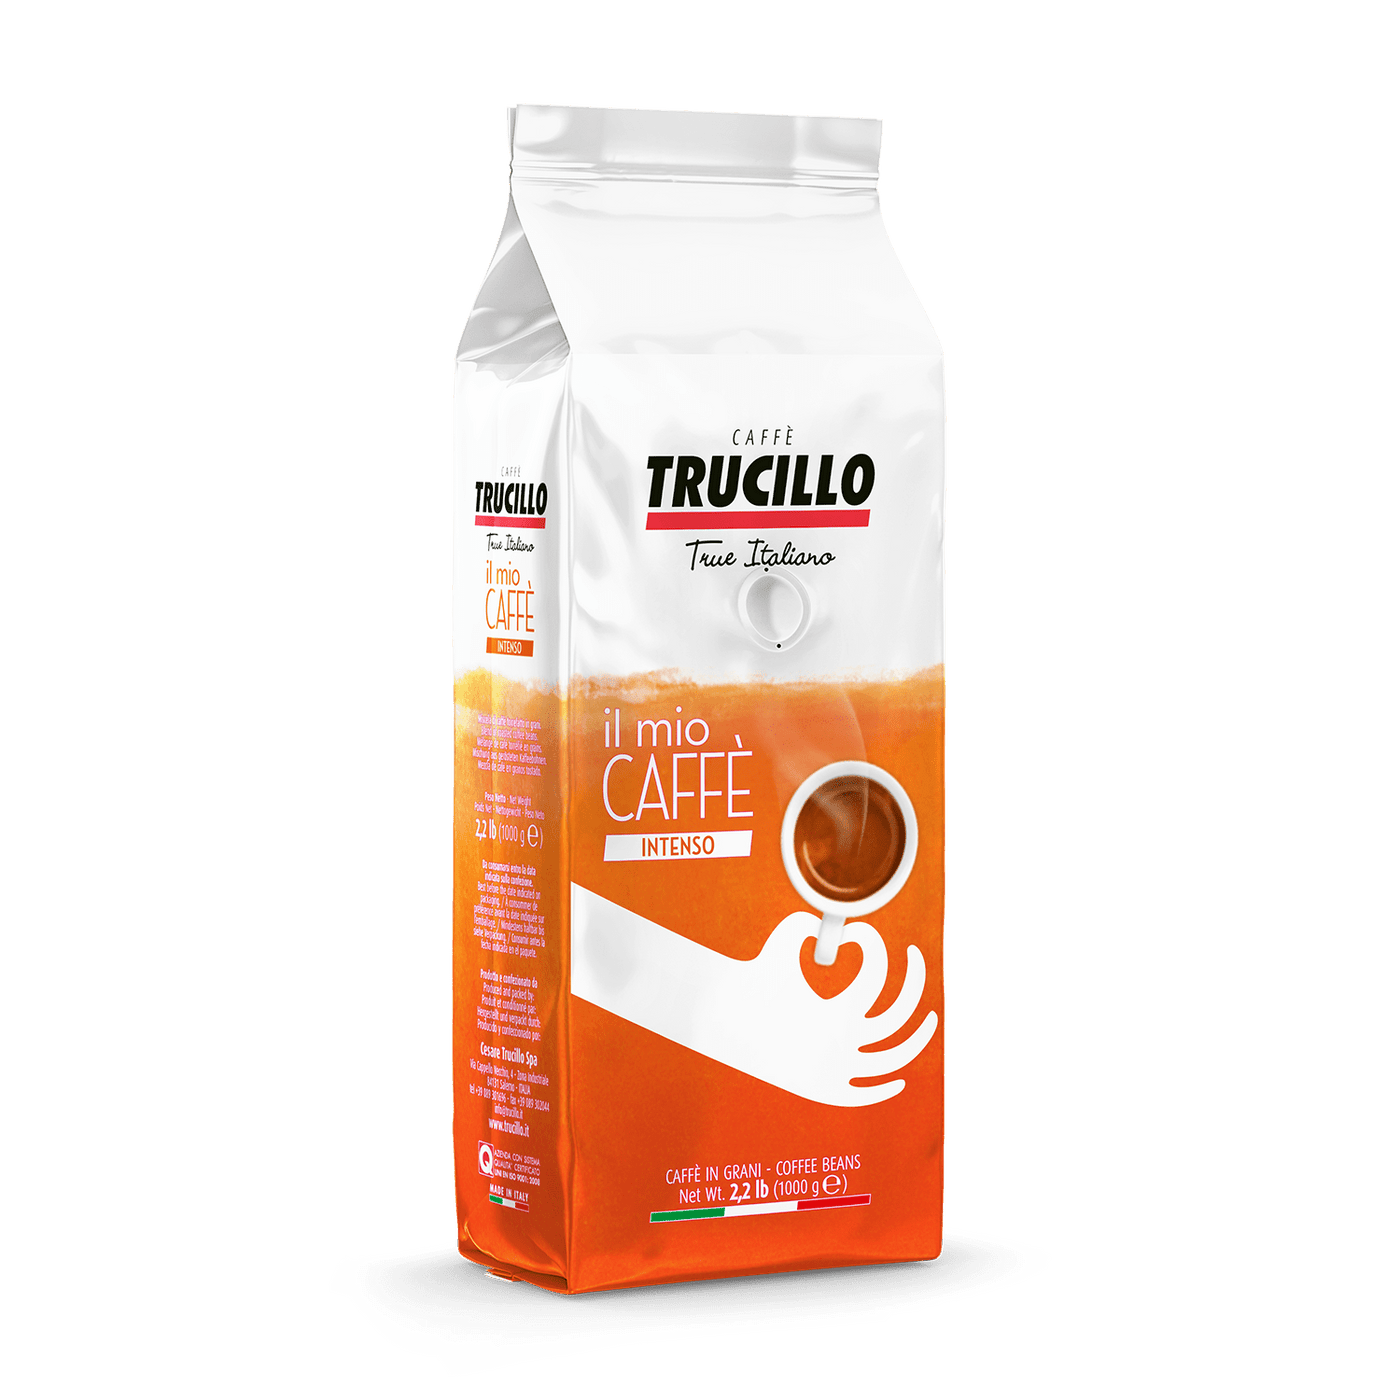 Trucillo Coffee 1 Kg / 2.2 lbs Il Mio Caffé Intenso